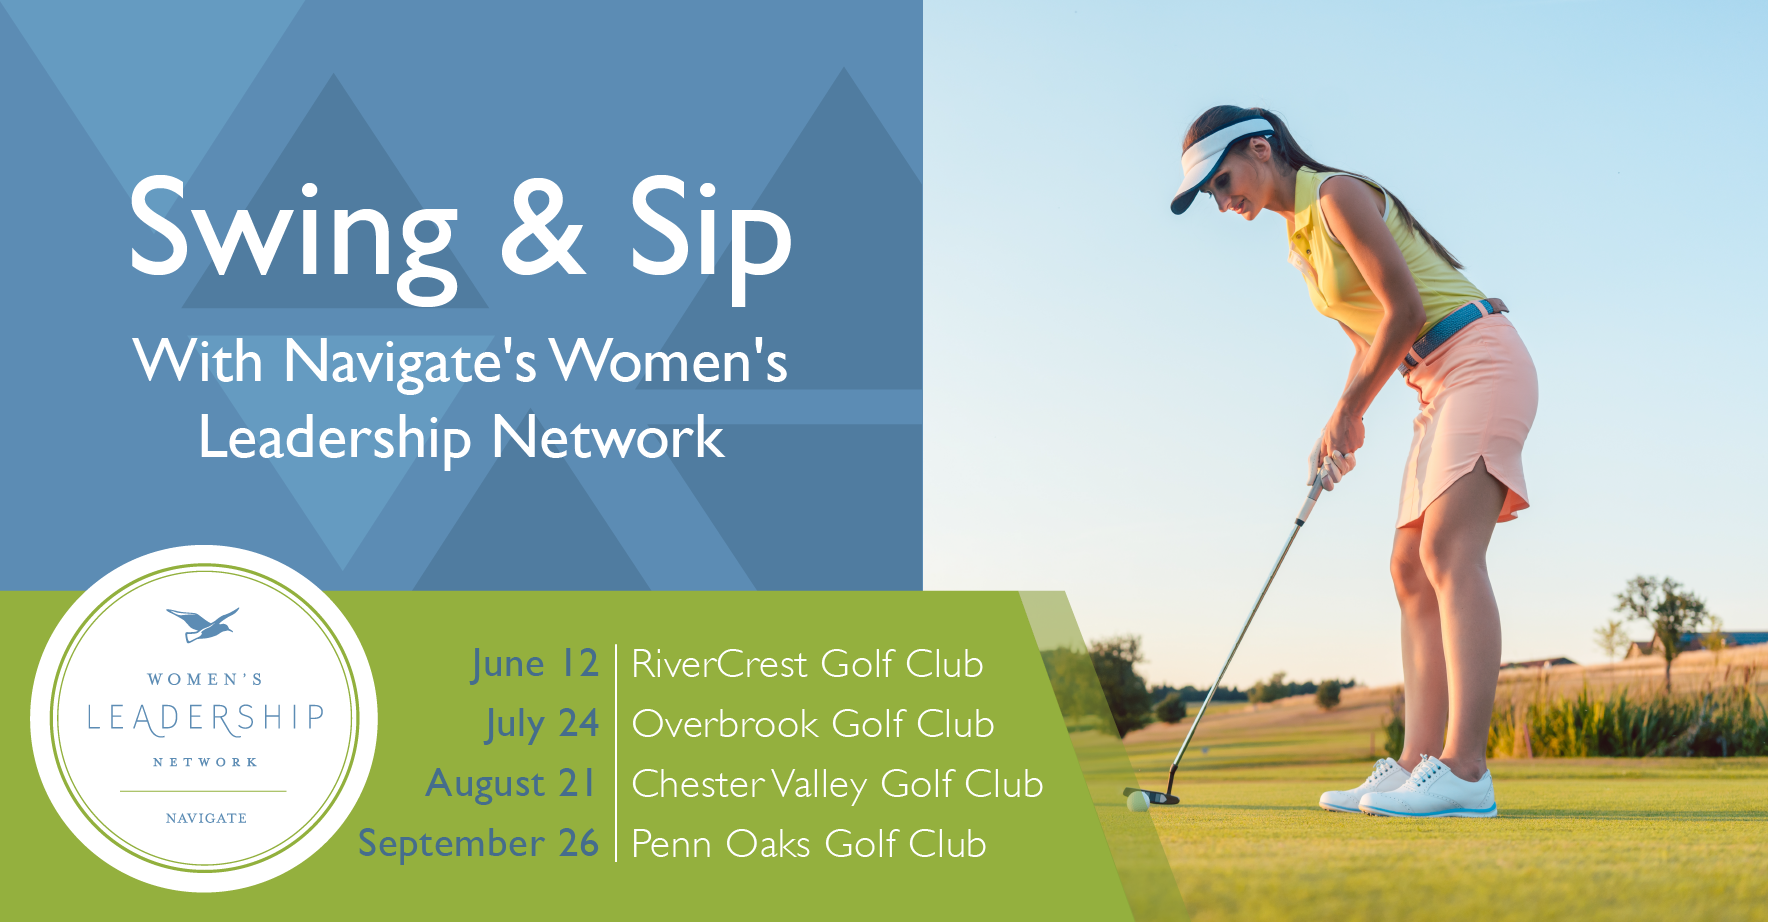 Swing & Sip 2019 - Penn Oaks Golf Club